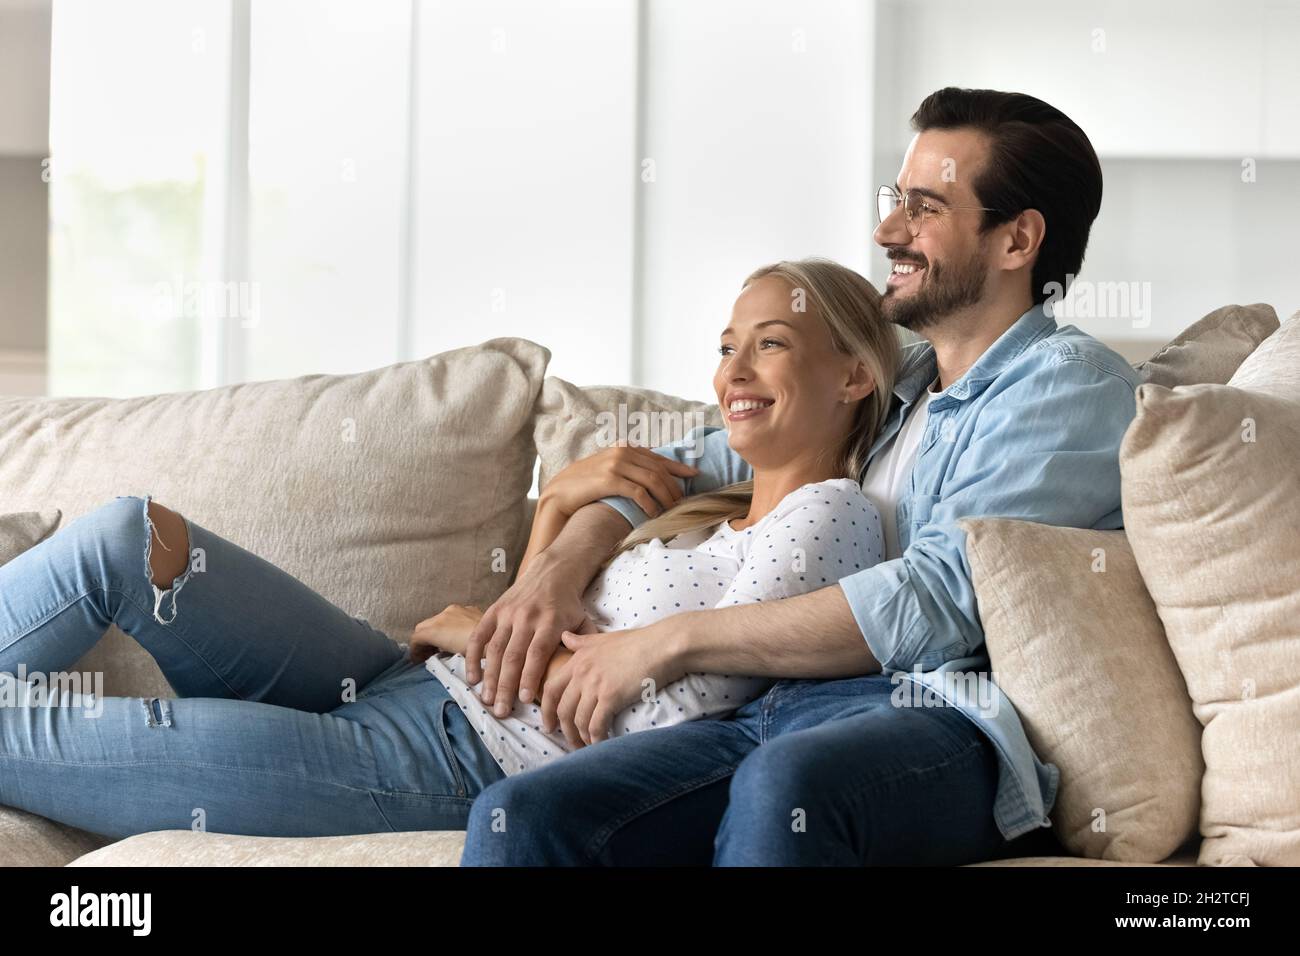 Glückliches Bonden verträumtes junges Familienpaar, das sich auf einem gemütlichen Sofa ausruht. Stockfoto